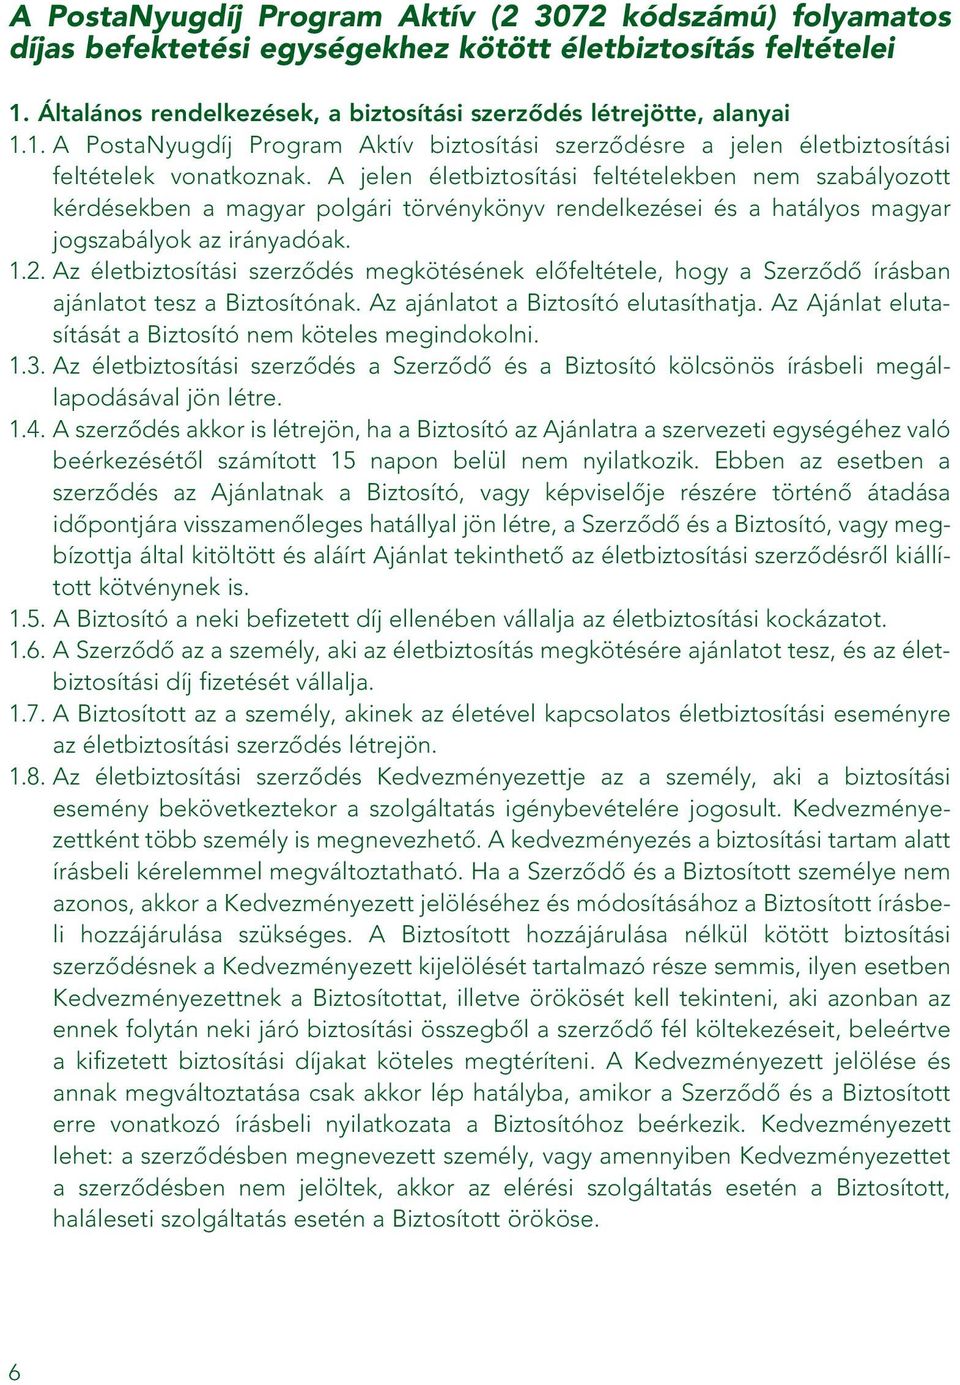 A jelen életbiztosítási feltételekben nem szabályozott kérdésekben a magyar polgári törvénykönyv rendelkezései és a hatályos magyar jogszabályok az irányadóak. 1.2.